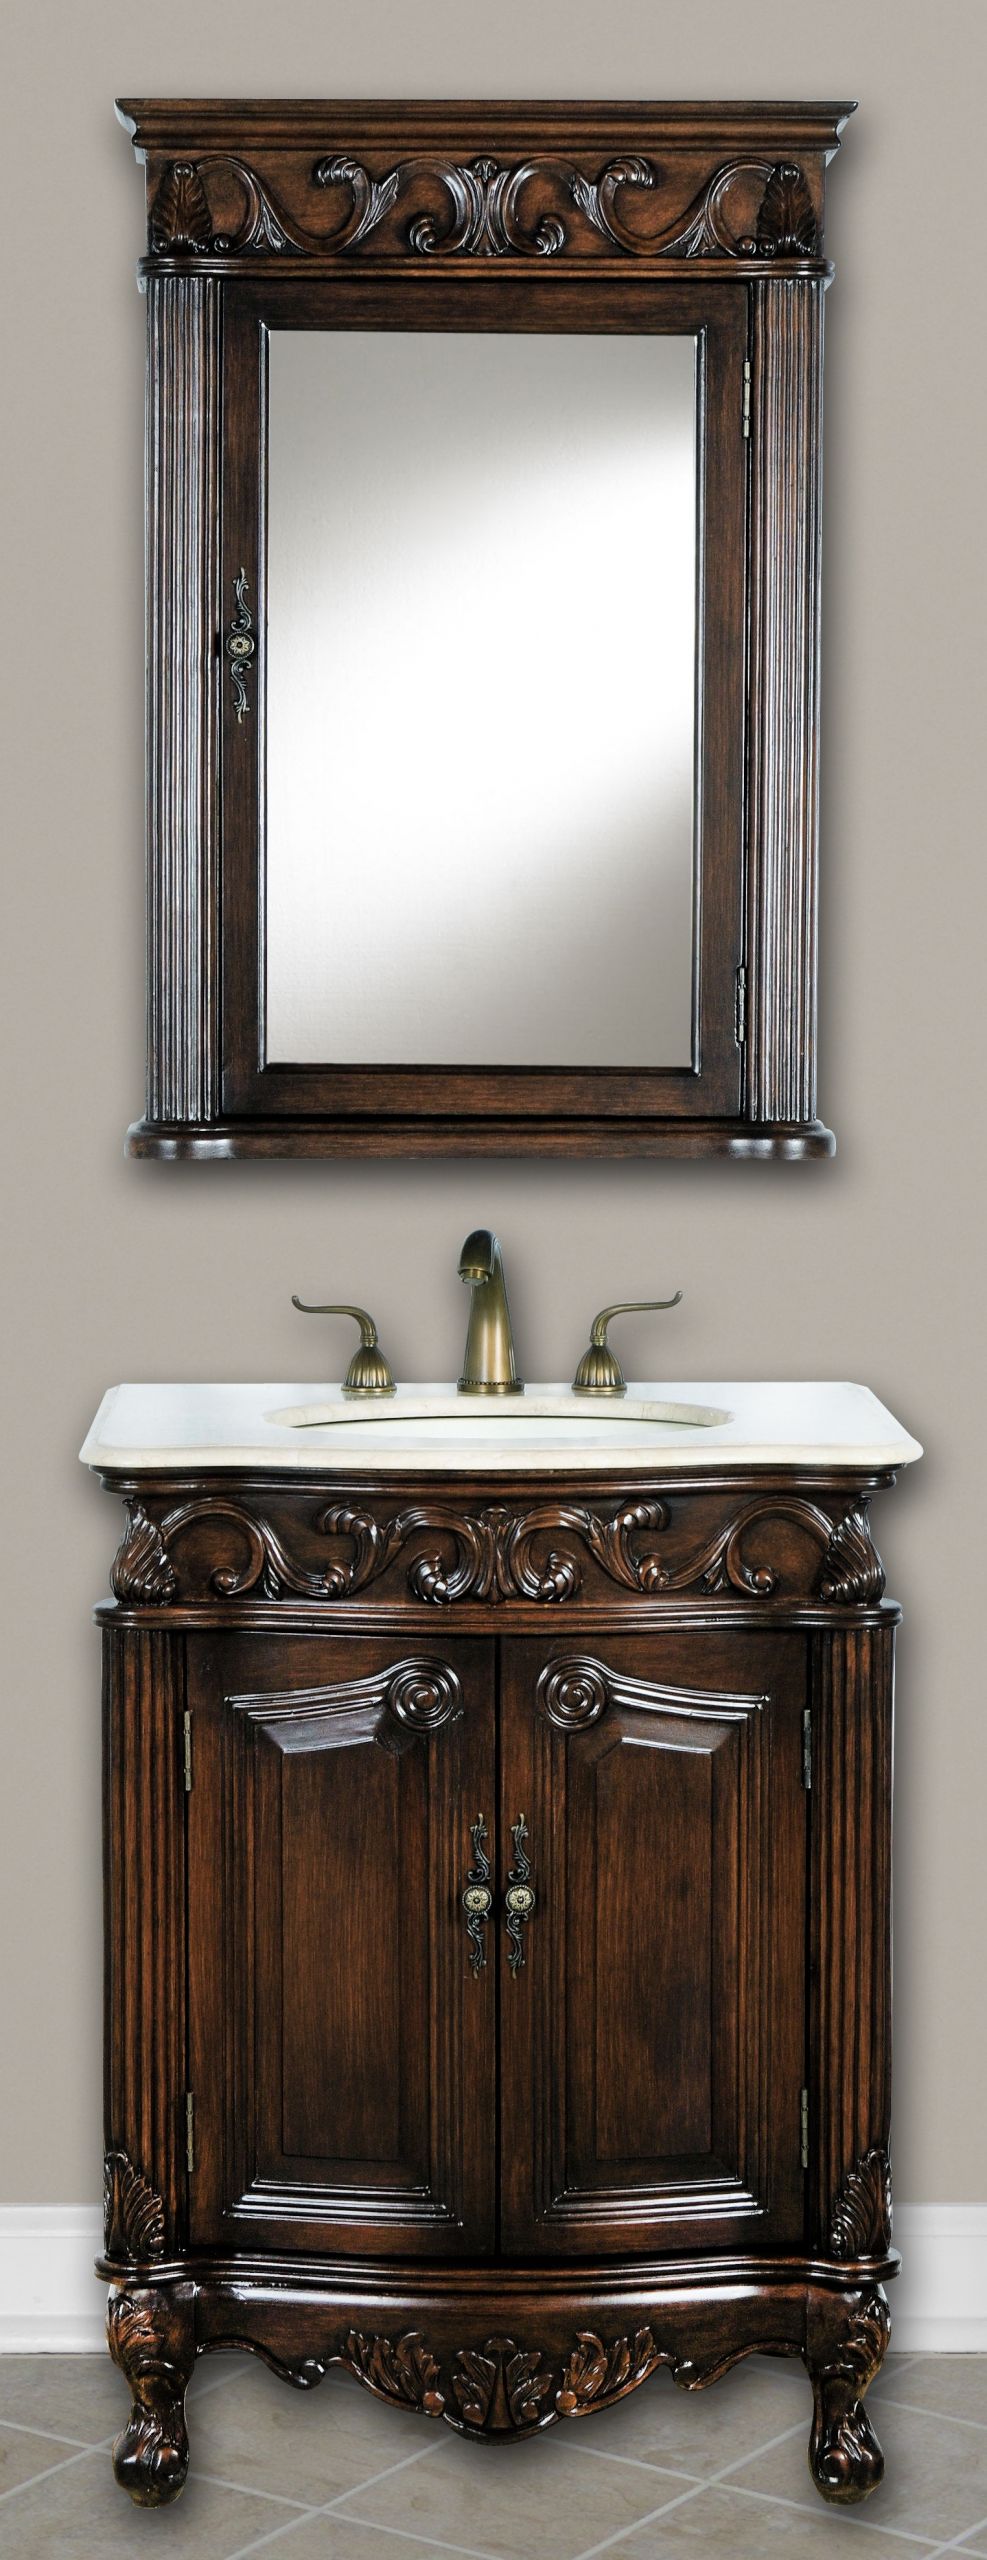 12 Inch Bathroom Sink Vanity
 12 Inch to 29 Inch Wide Vanities